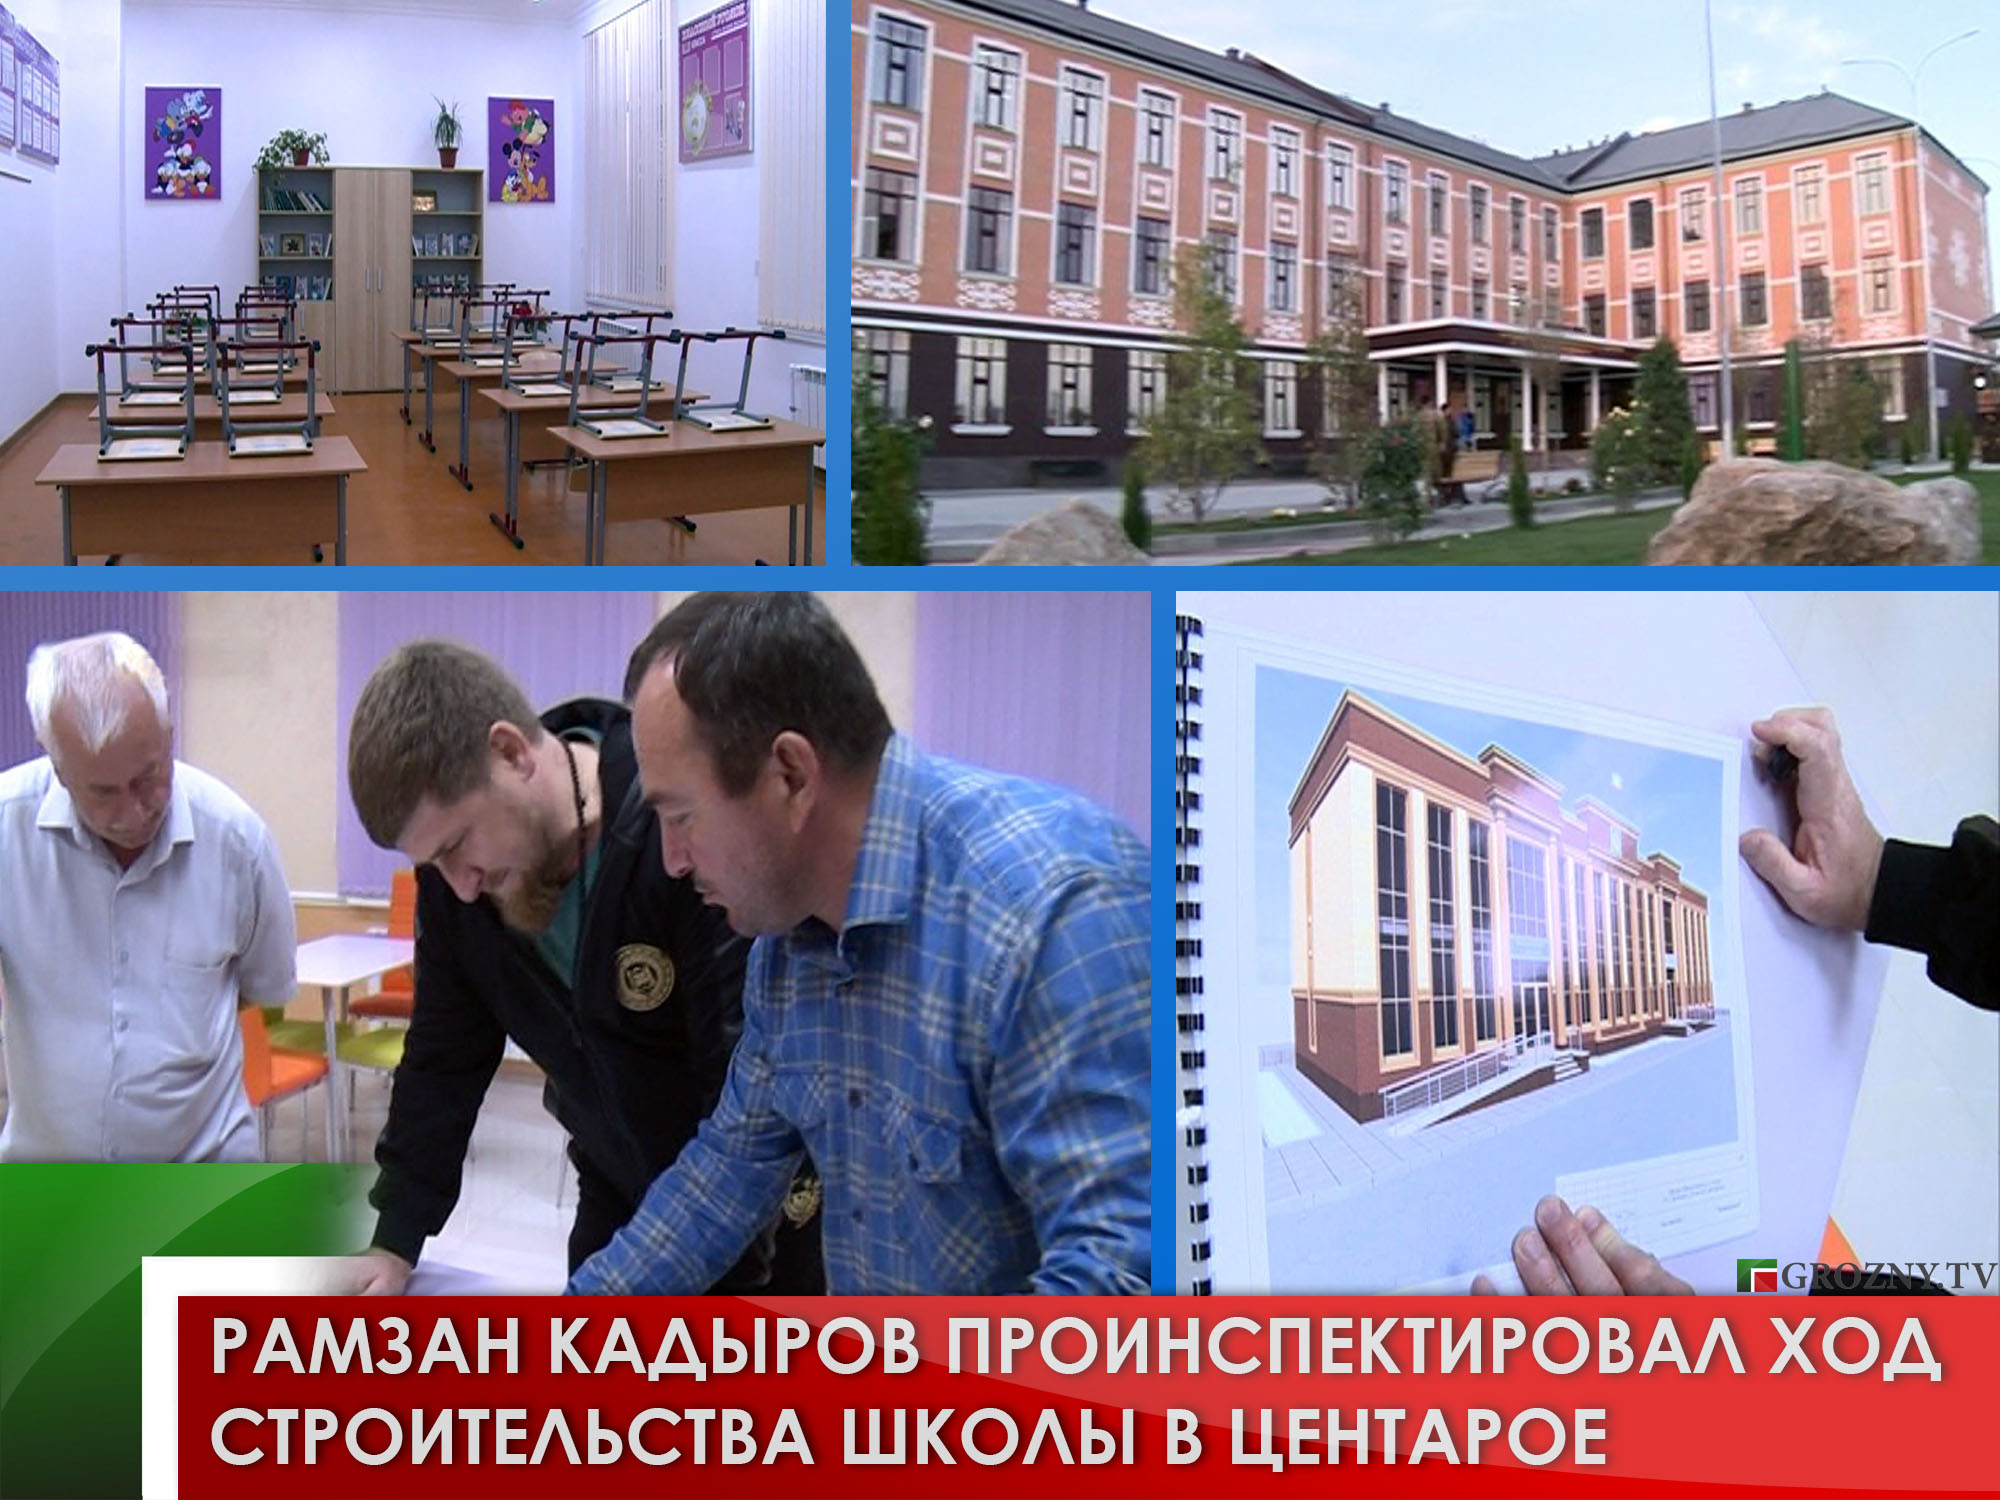 Рамзан Кадыров проинспектировал ход строительства школы в Центарое